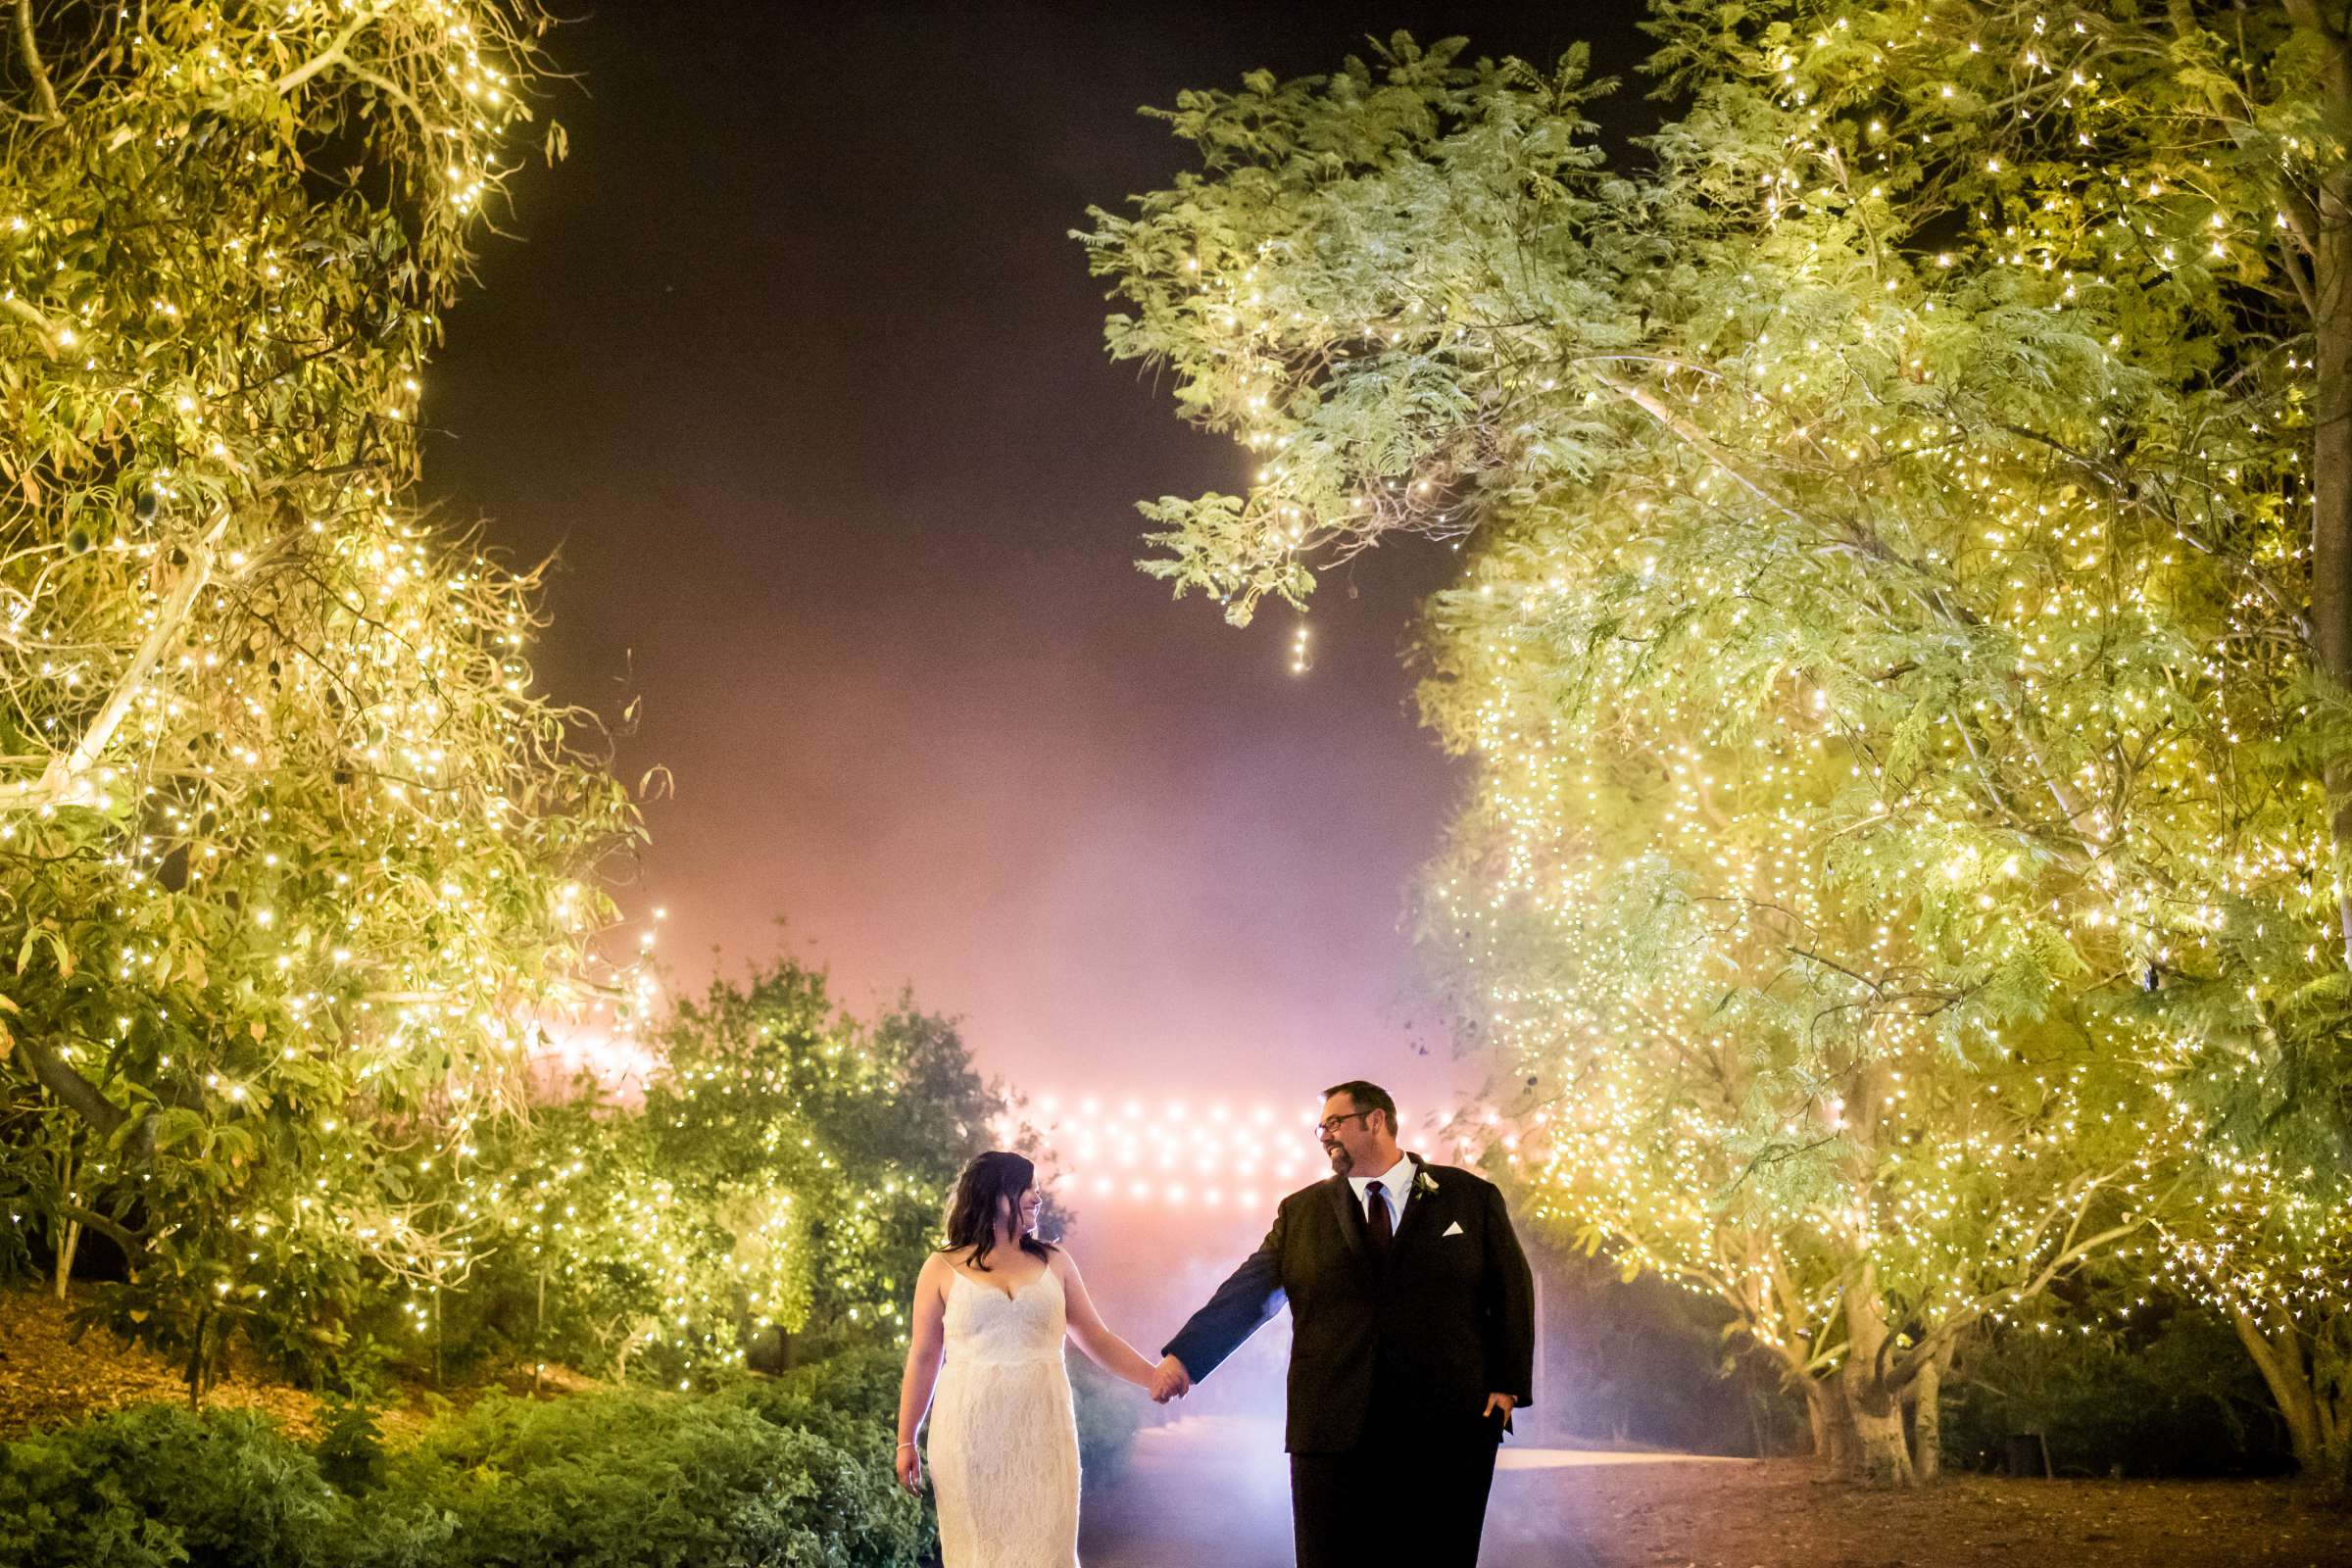 Ethereal Gardens Wedding, Lauren and Benjamin Wedding Photo #446518 by True Photography